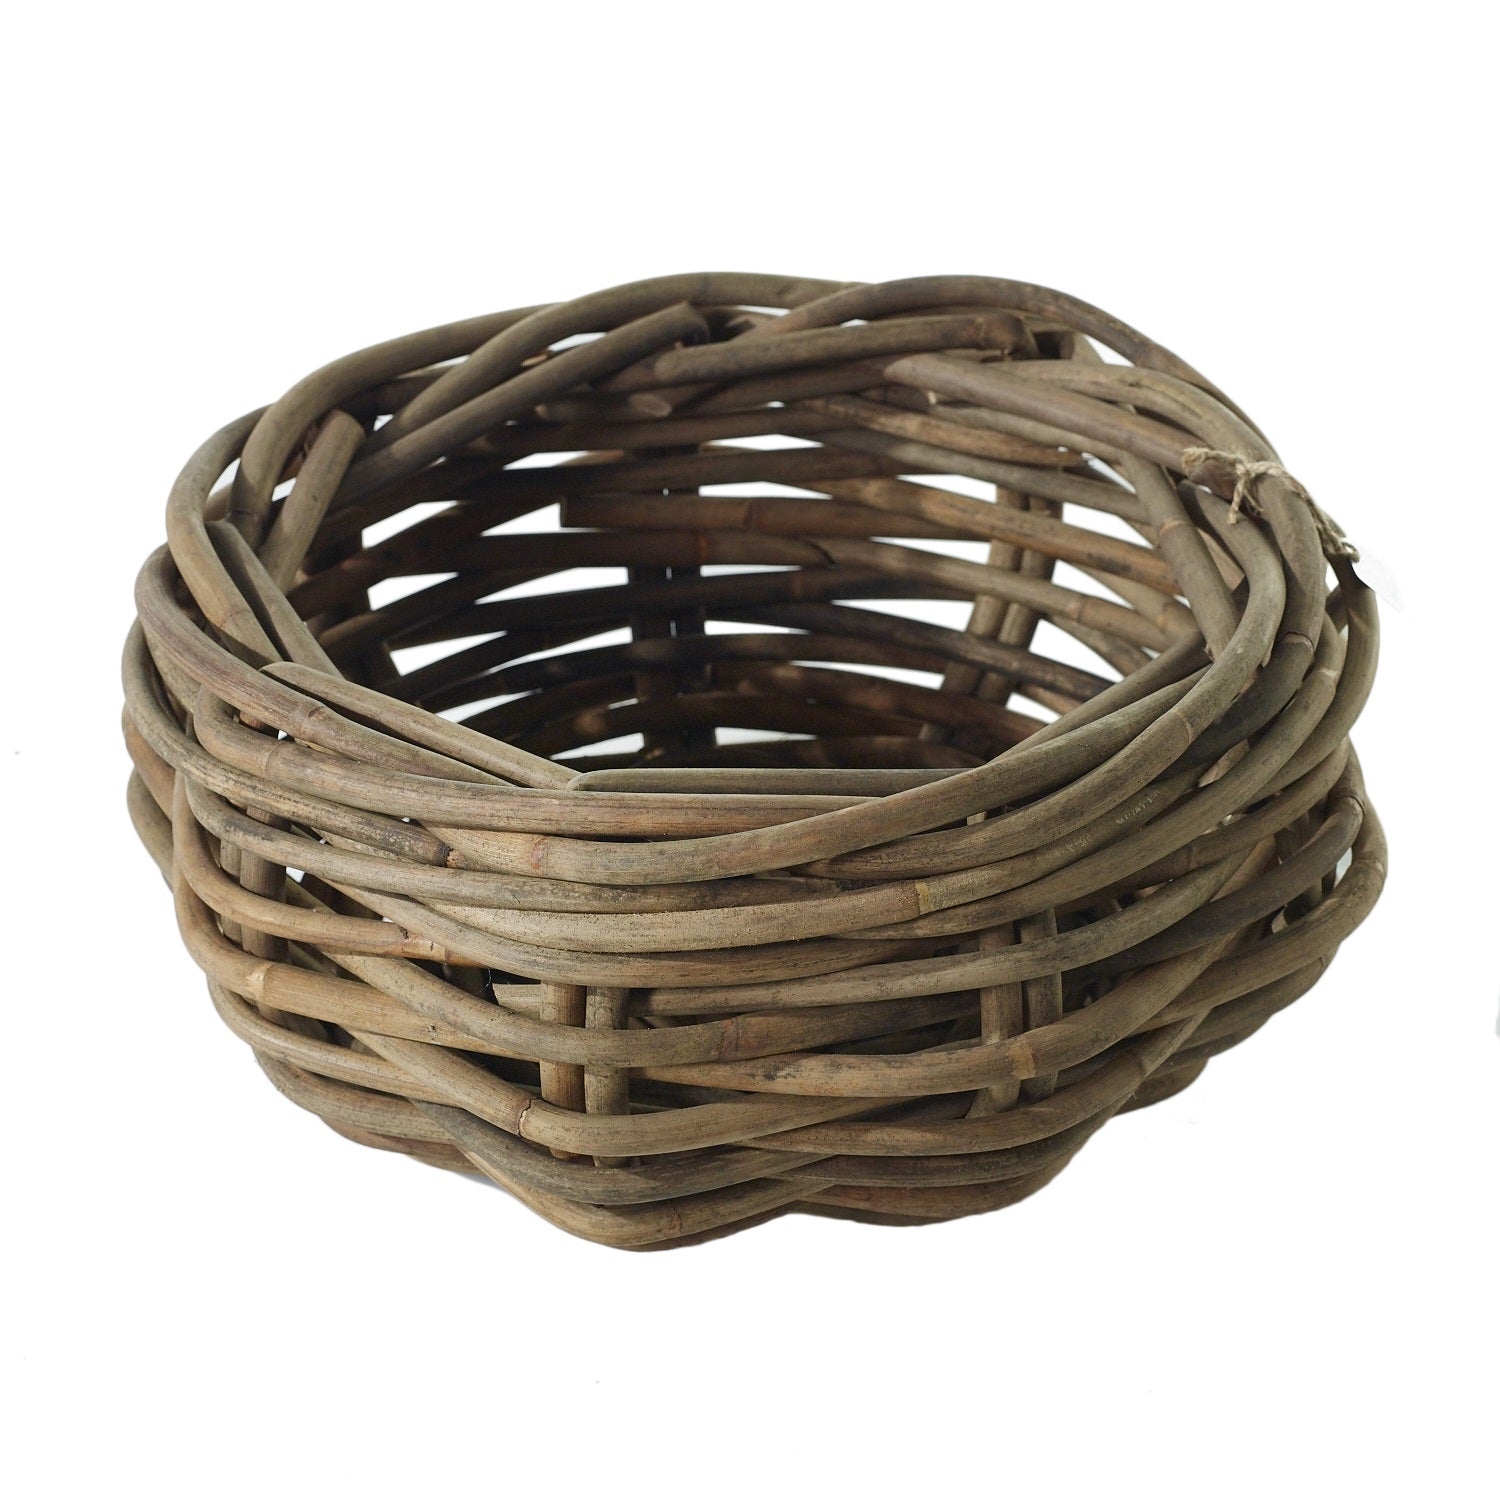 cabana rattan basket on white background